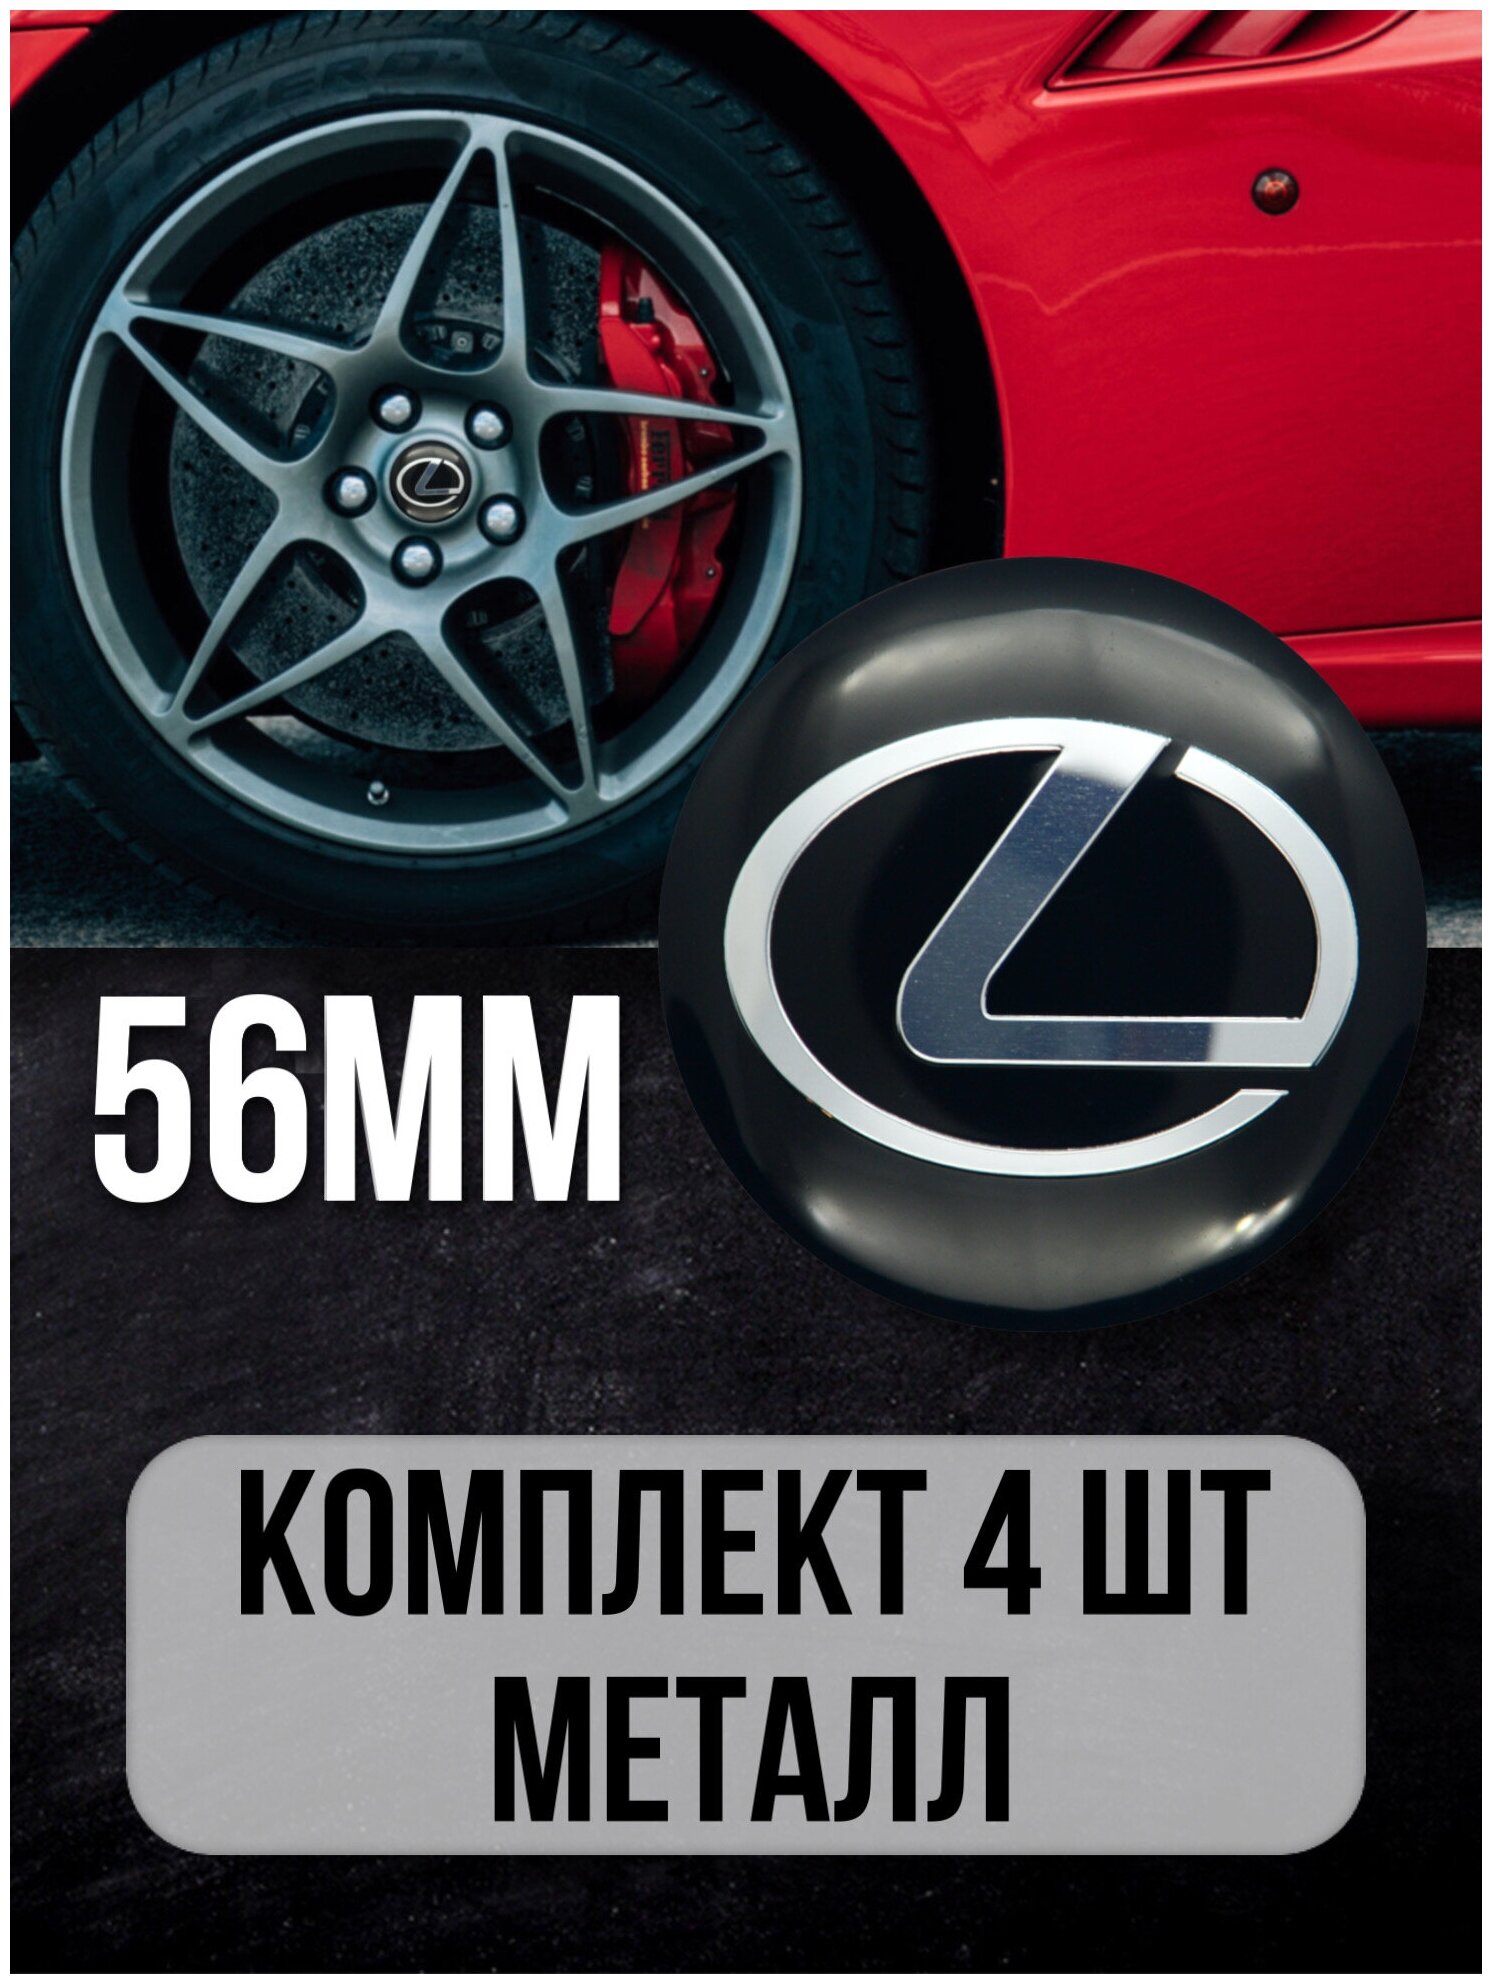 Наклейки на колесные диски алюминиевые 4шт наклейка на колесо автомобиля колпак для дисков стикиры с эмблемой Lexus D-56 mm